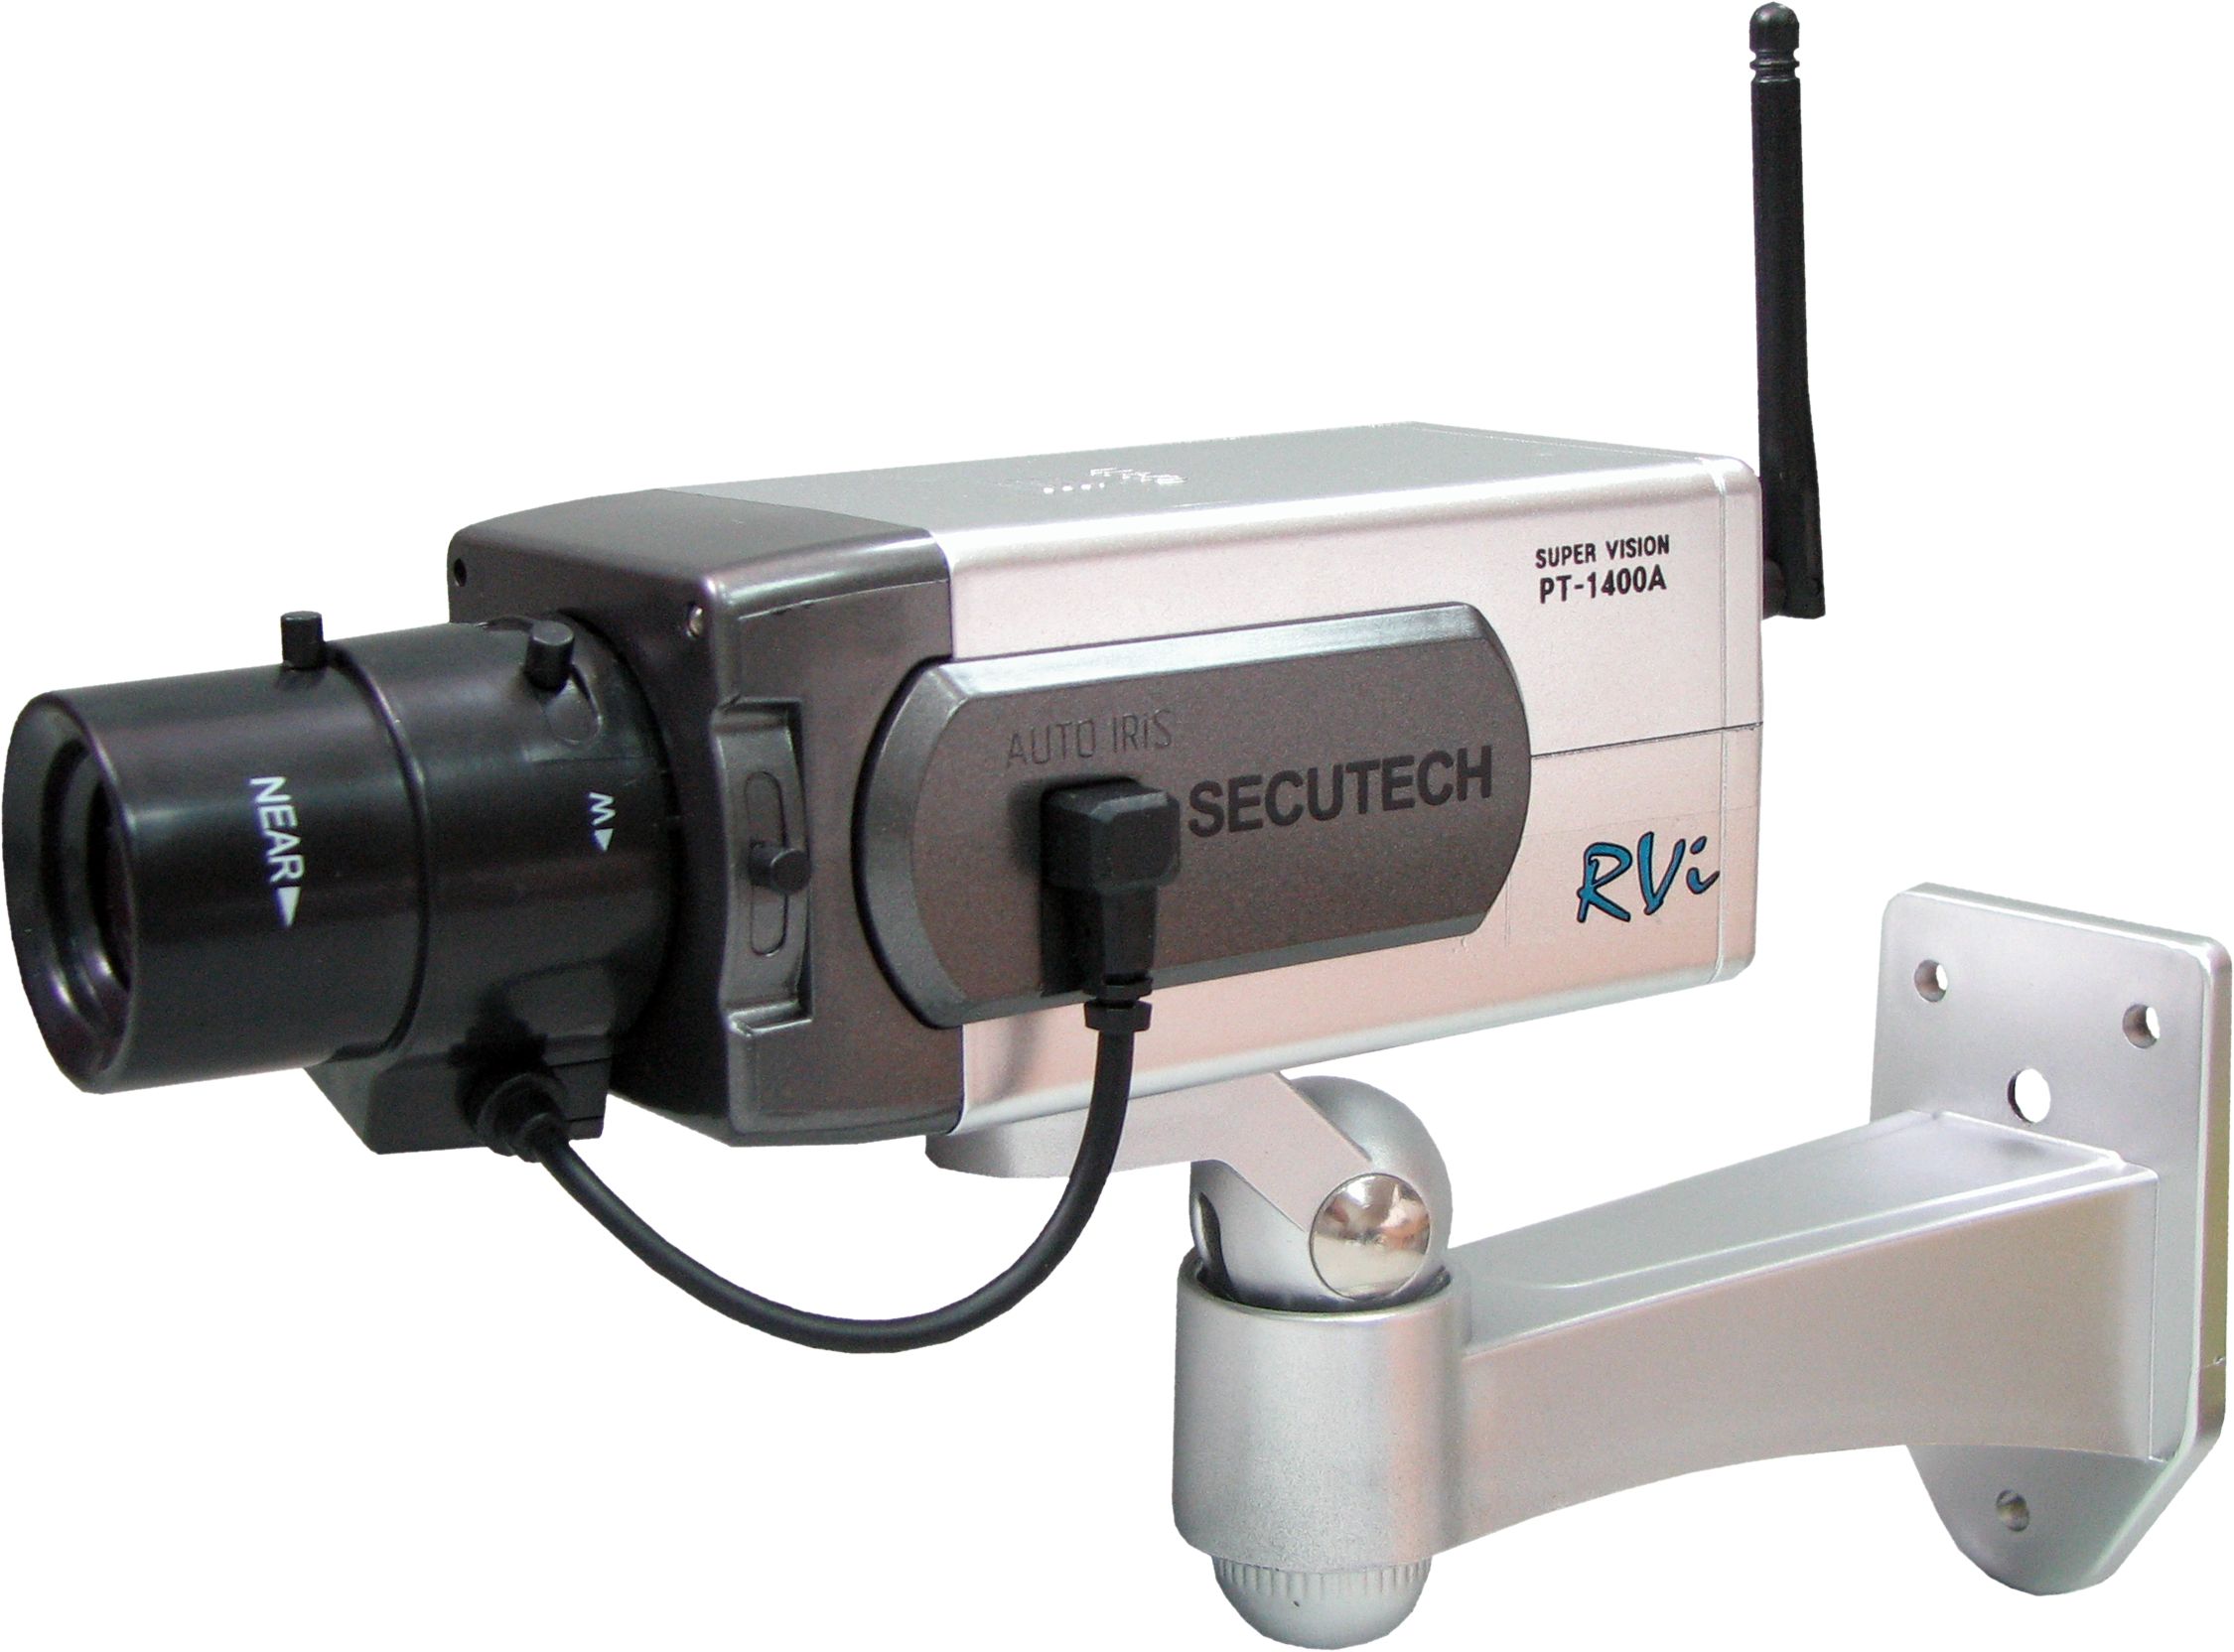 Муляж камеры видеонаблюдения моторизированный со встроенным детектором движения и антенной.